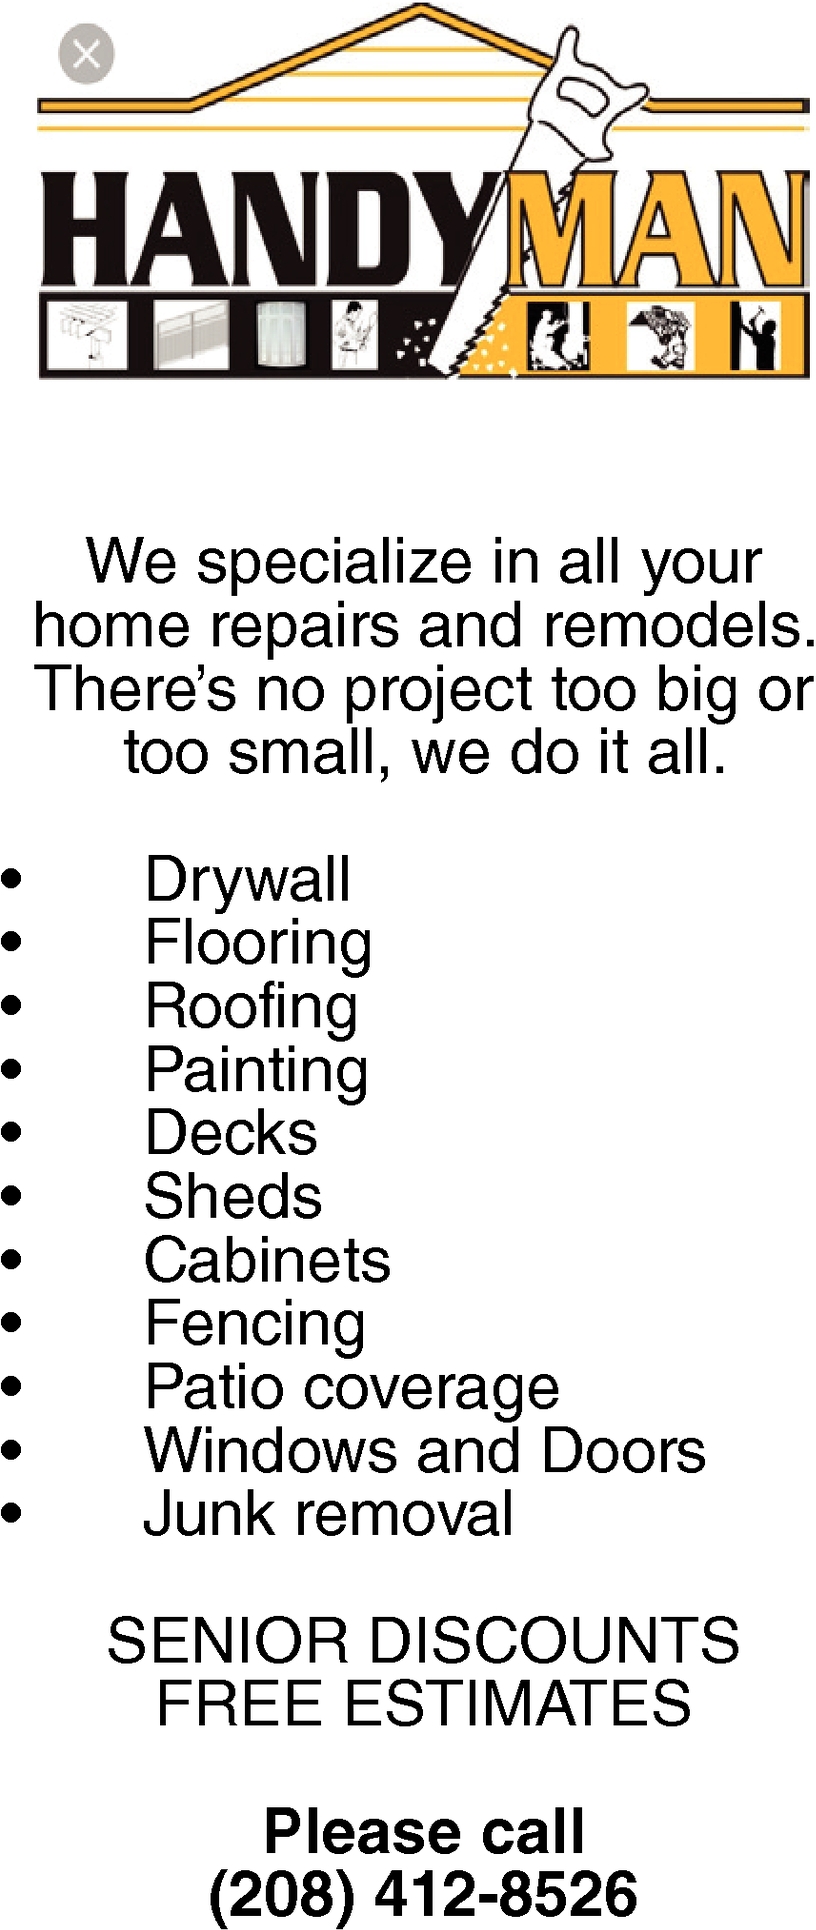 Home Repairs and Remodels